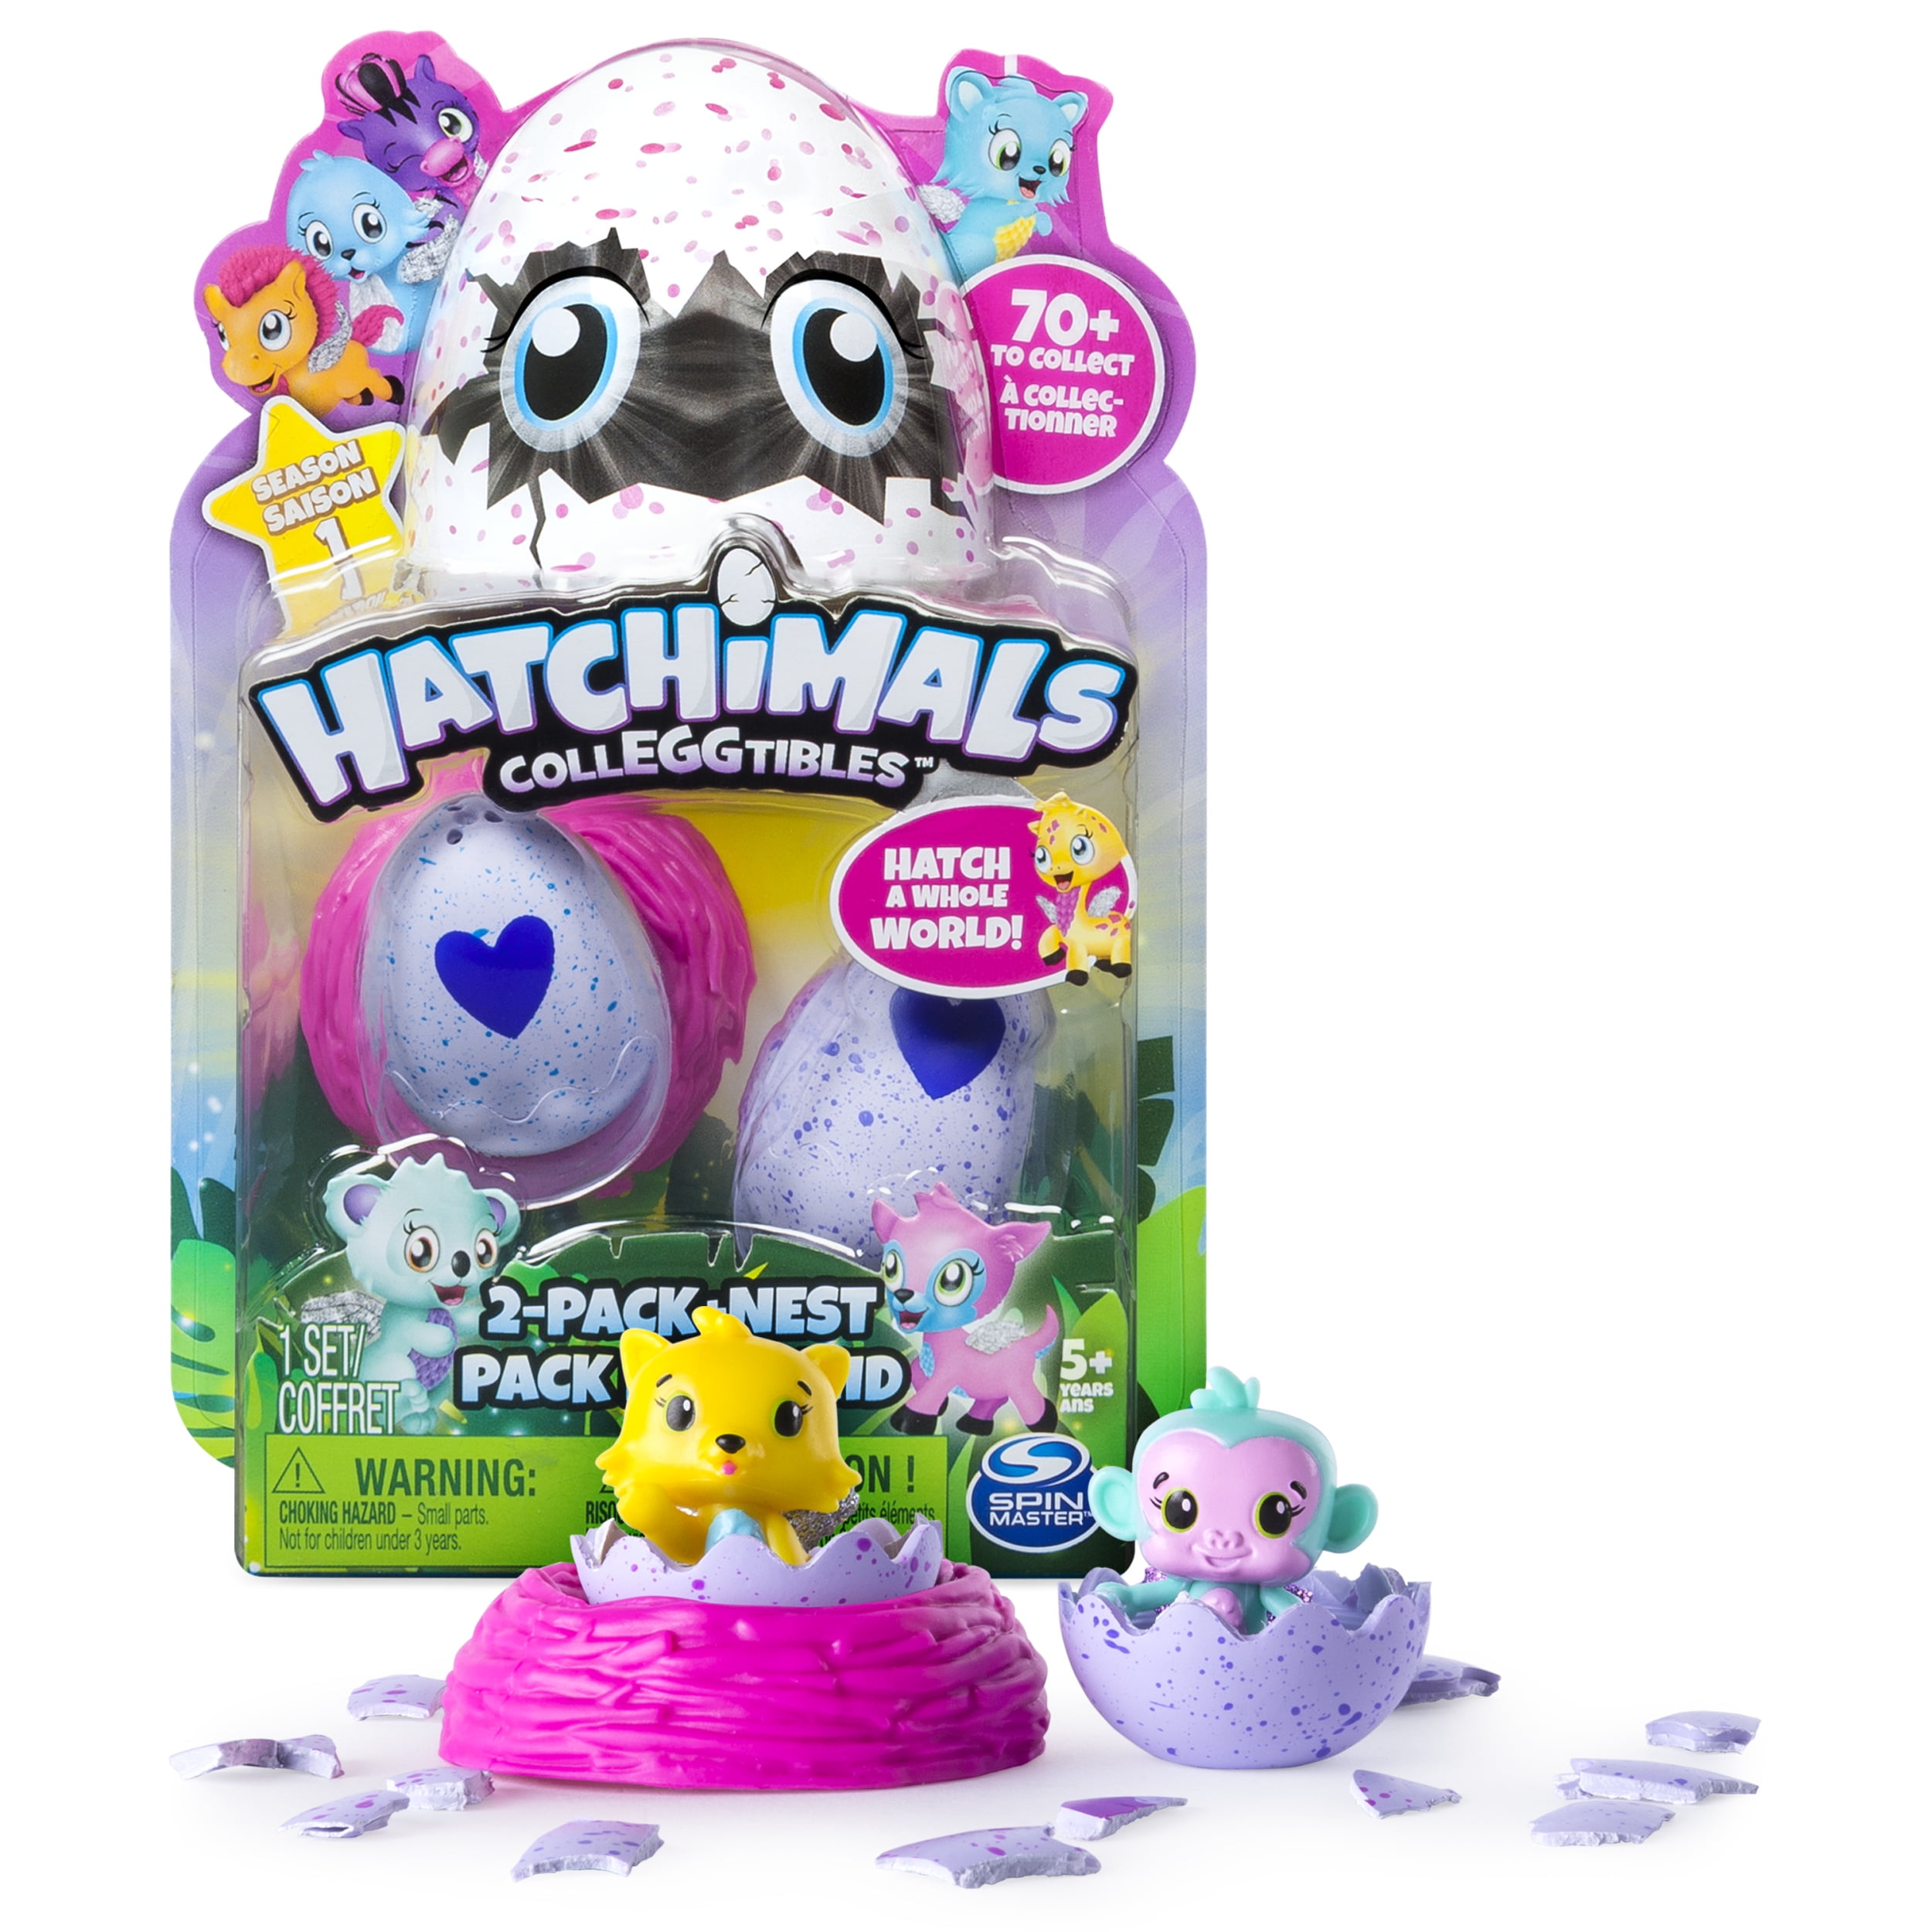 ---12 Pack Collectible egg carton RARE! New Hatchimals Colleggtibles Season 1 